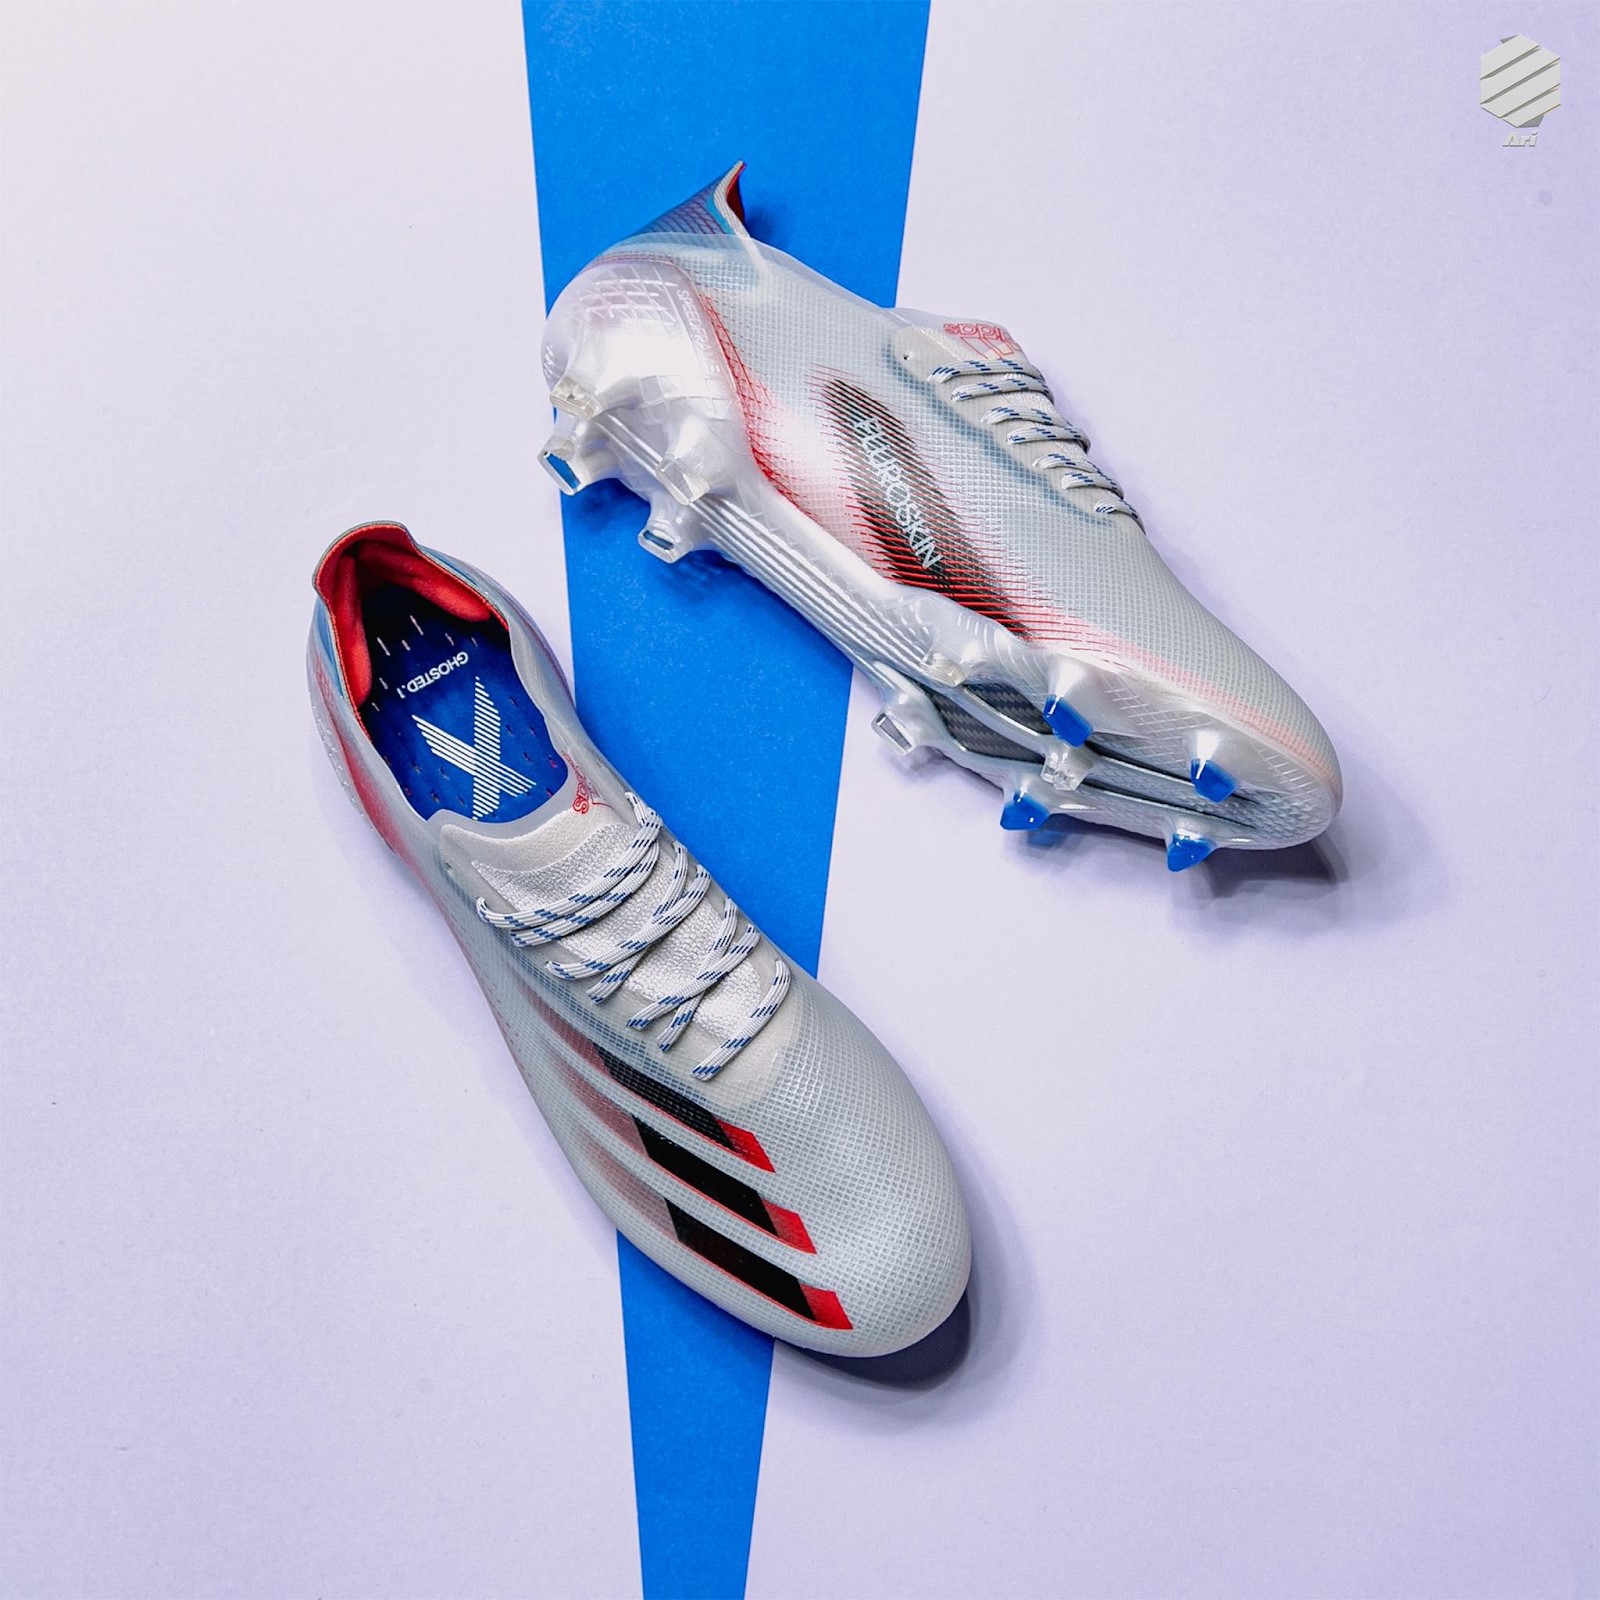 Tiền đạo Karim Benzema mang giày đá bóng adidas X Ghosted Showpiece Pack